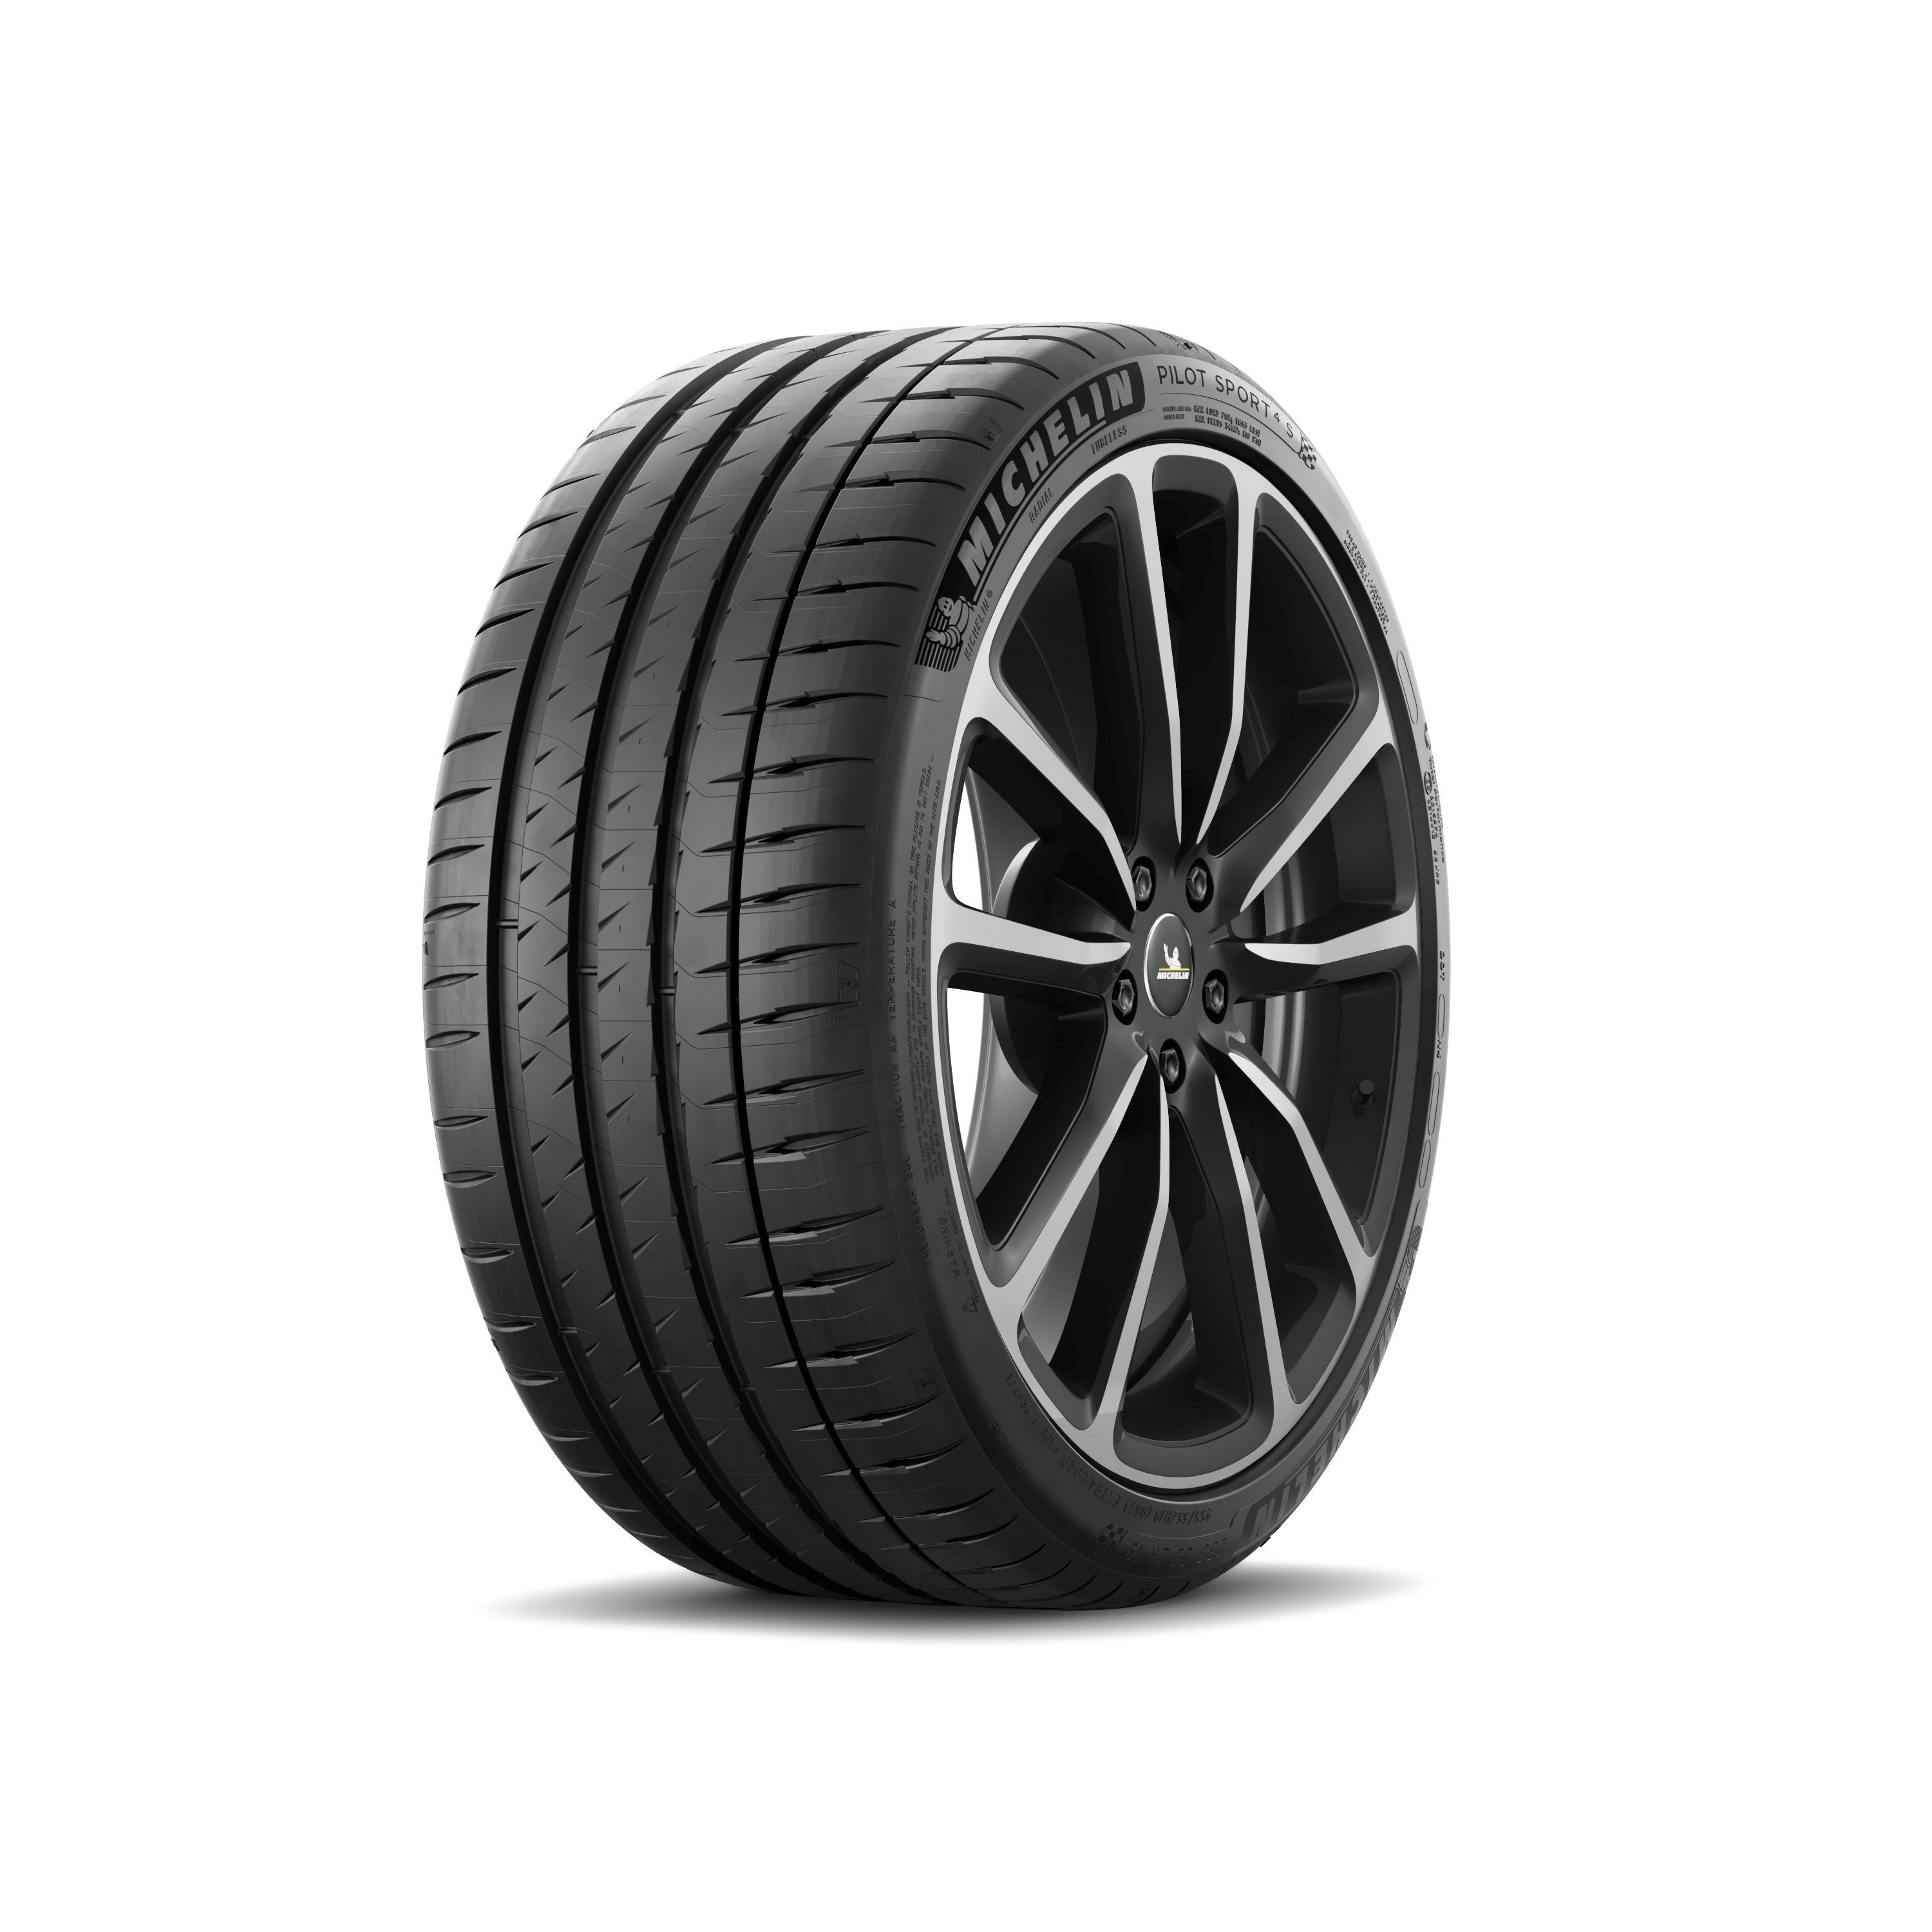 MICHELIN Pilot Sport 4 S - Car Tire | MICHELIN USA